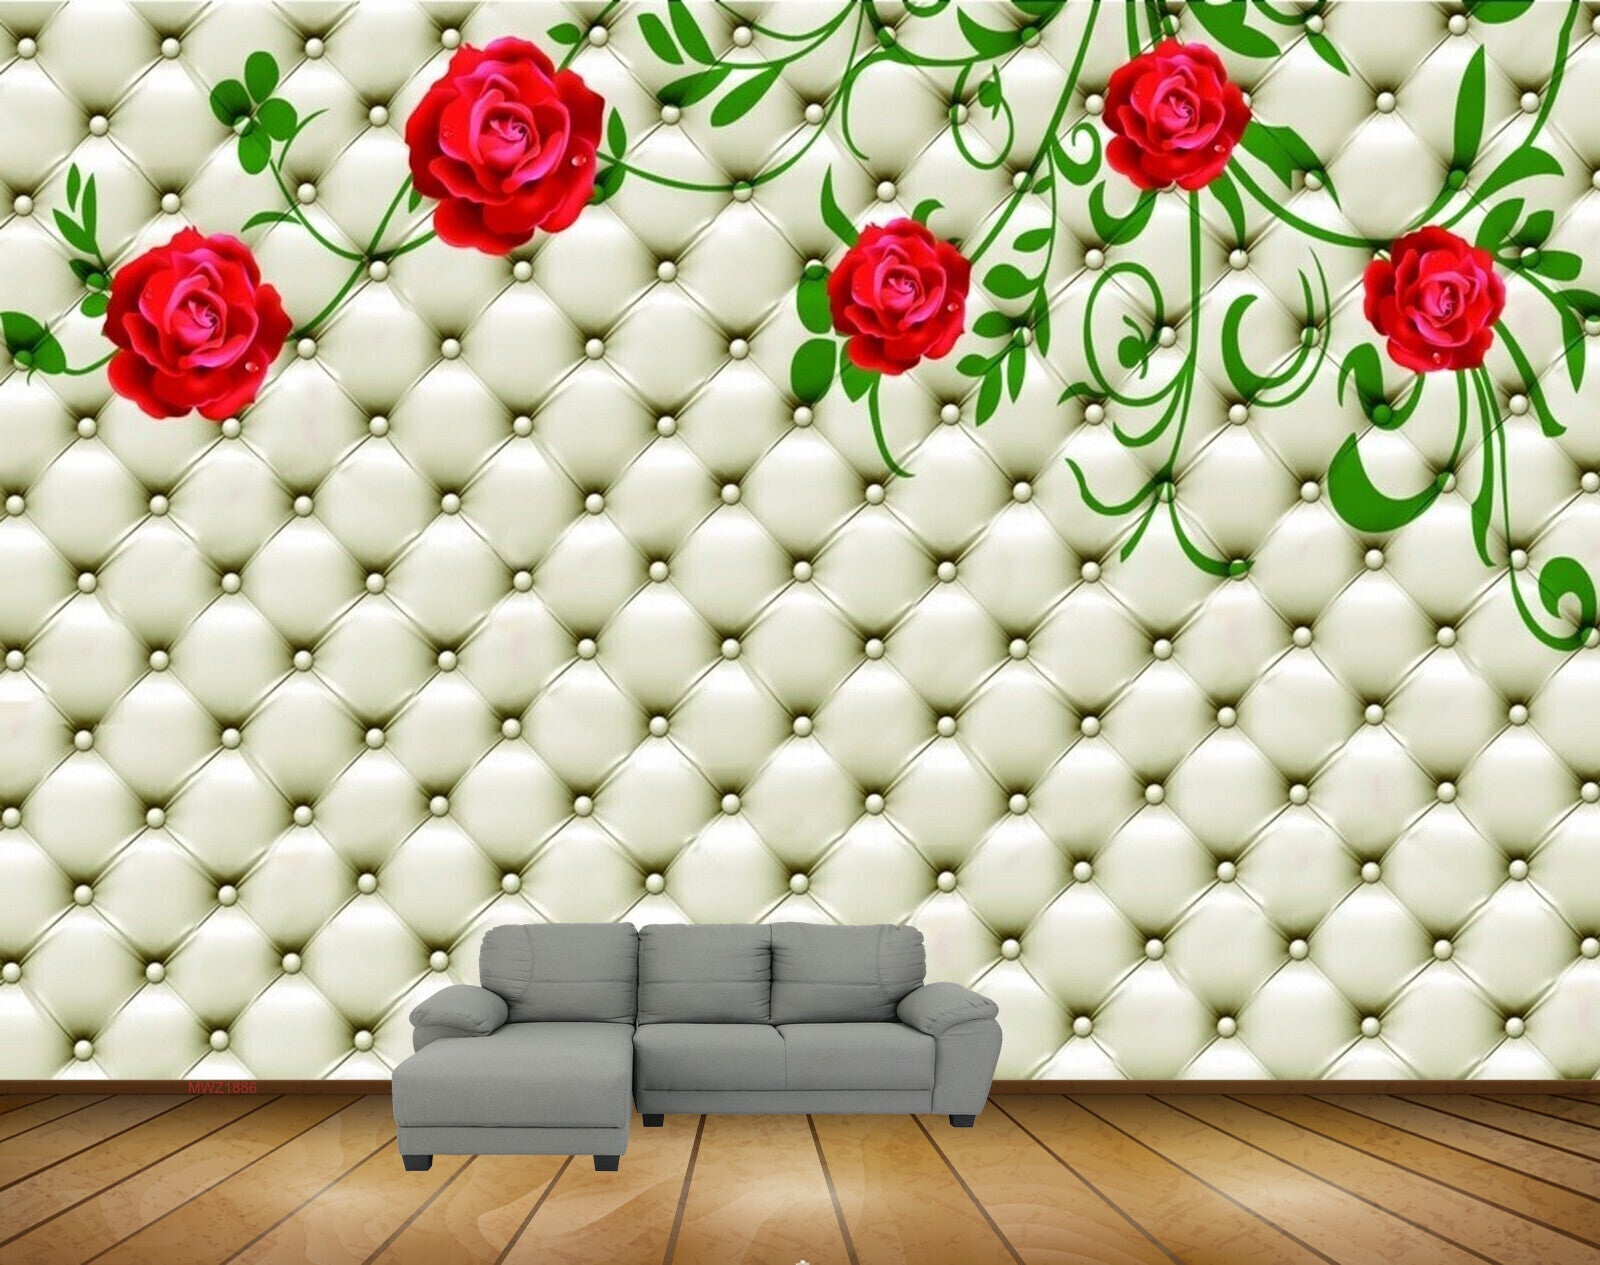 Avikalp MWZ1886 Red Rose Flowers Leaves 3D HD Wallpaper